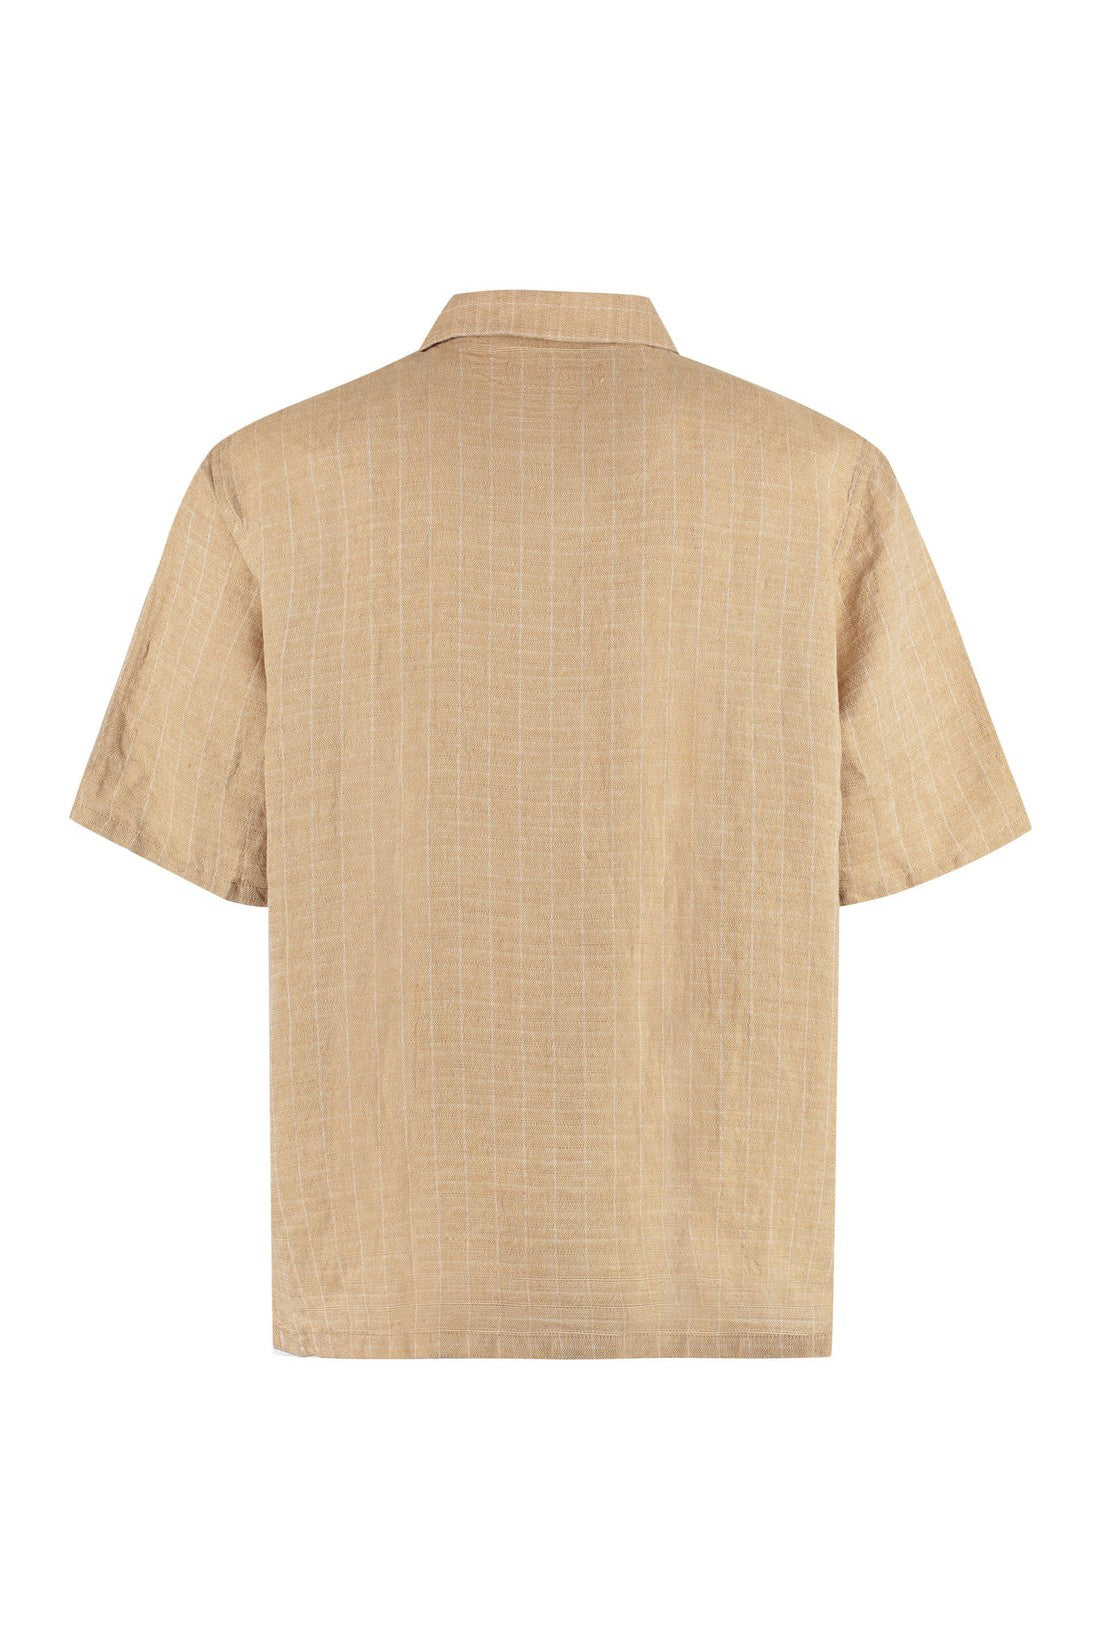 Our Legacy-OUTLET-SALE-Elder linen shirt-ARCHIVIST